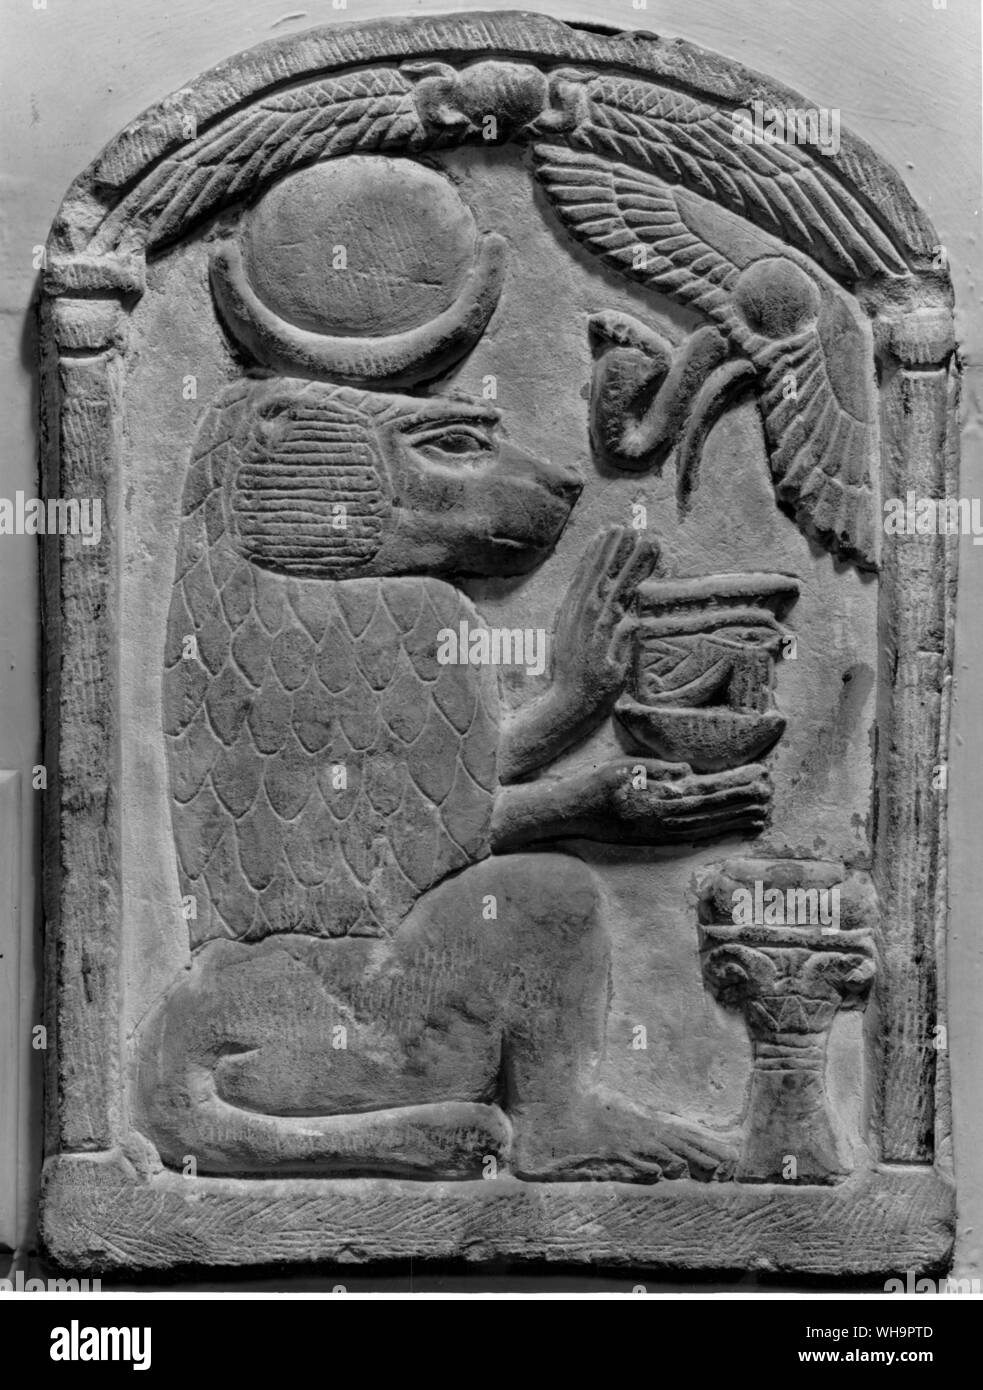 Thot, der ägyptische Gott der Weisheit und der Magie, in der Form eines Affen gezeigt Stockfoto